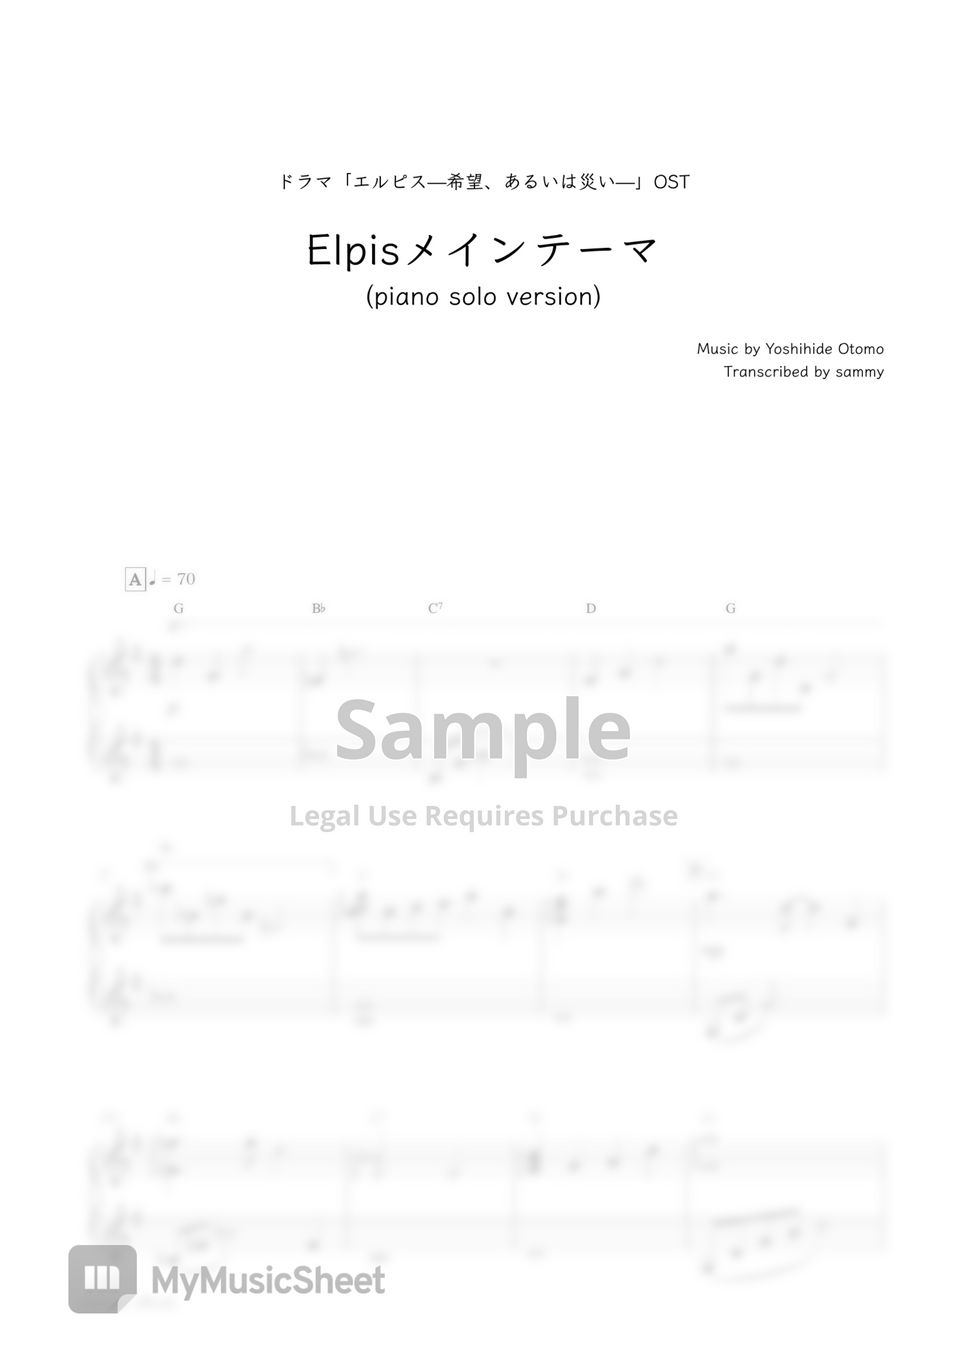 ドラマ『エルピス—希望、あるいは災い—』OST - Elpis メインテーマ (piano solo version) by sammy